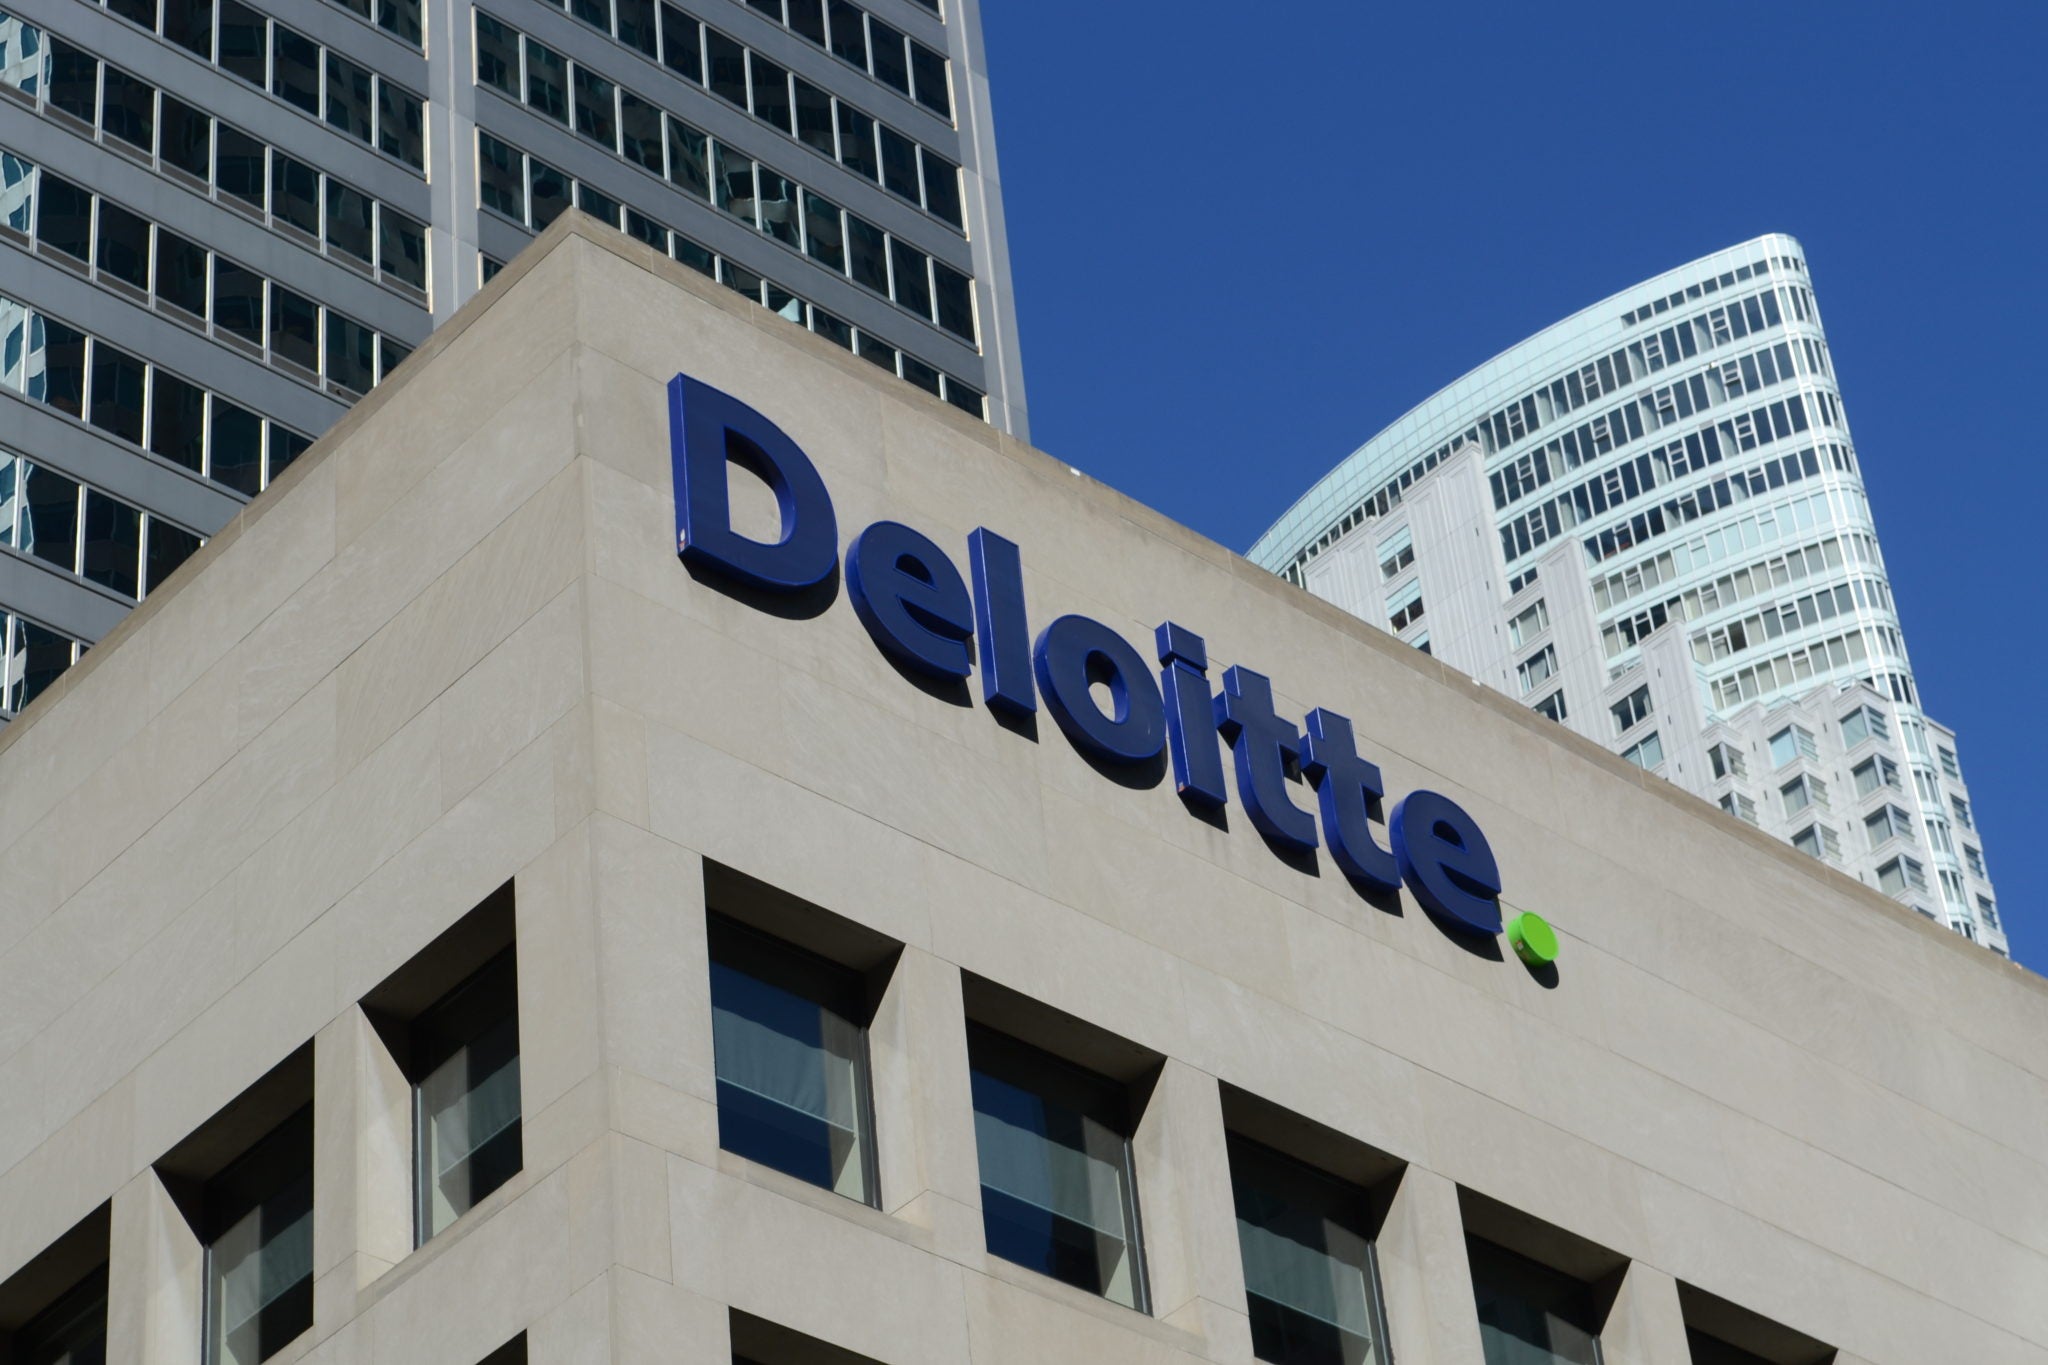 Deloitte cyber-attack reveals blue-chip client details - report